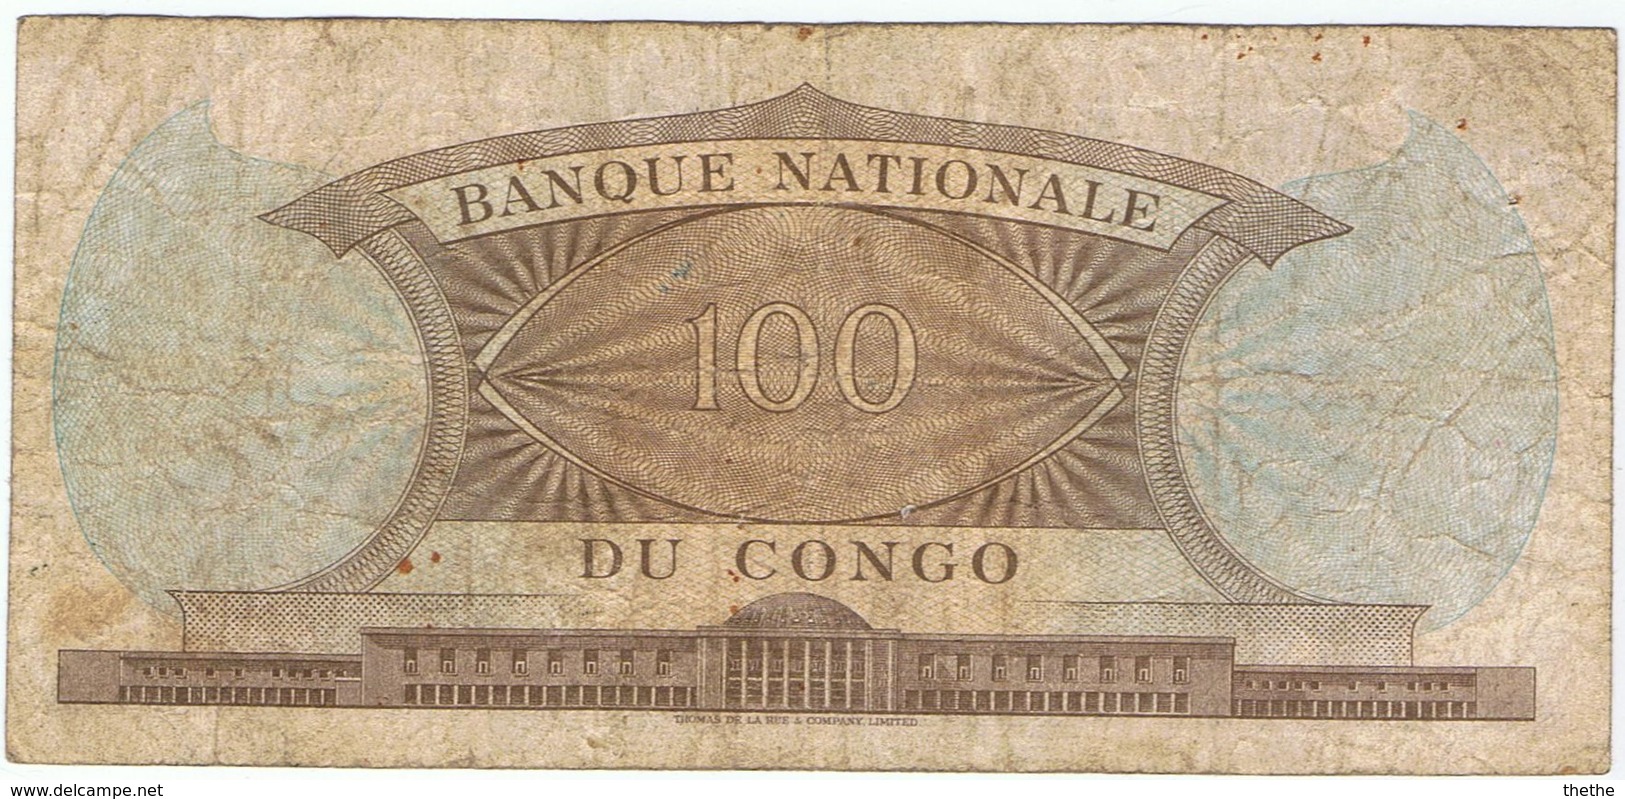 CONGO - 100 FRANCS - 1961 - República Del Congo (Congo Brazzaville)